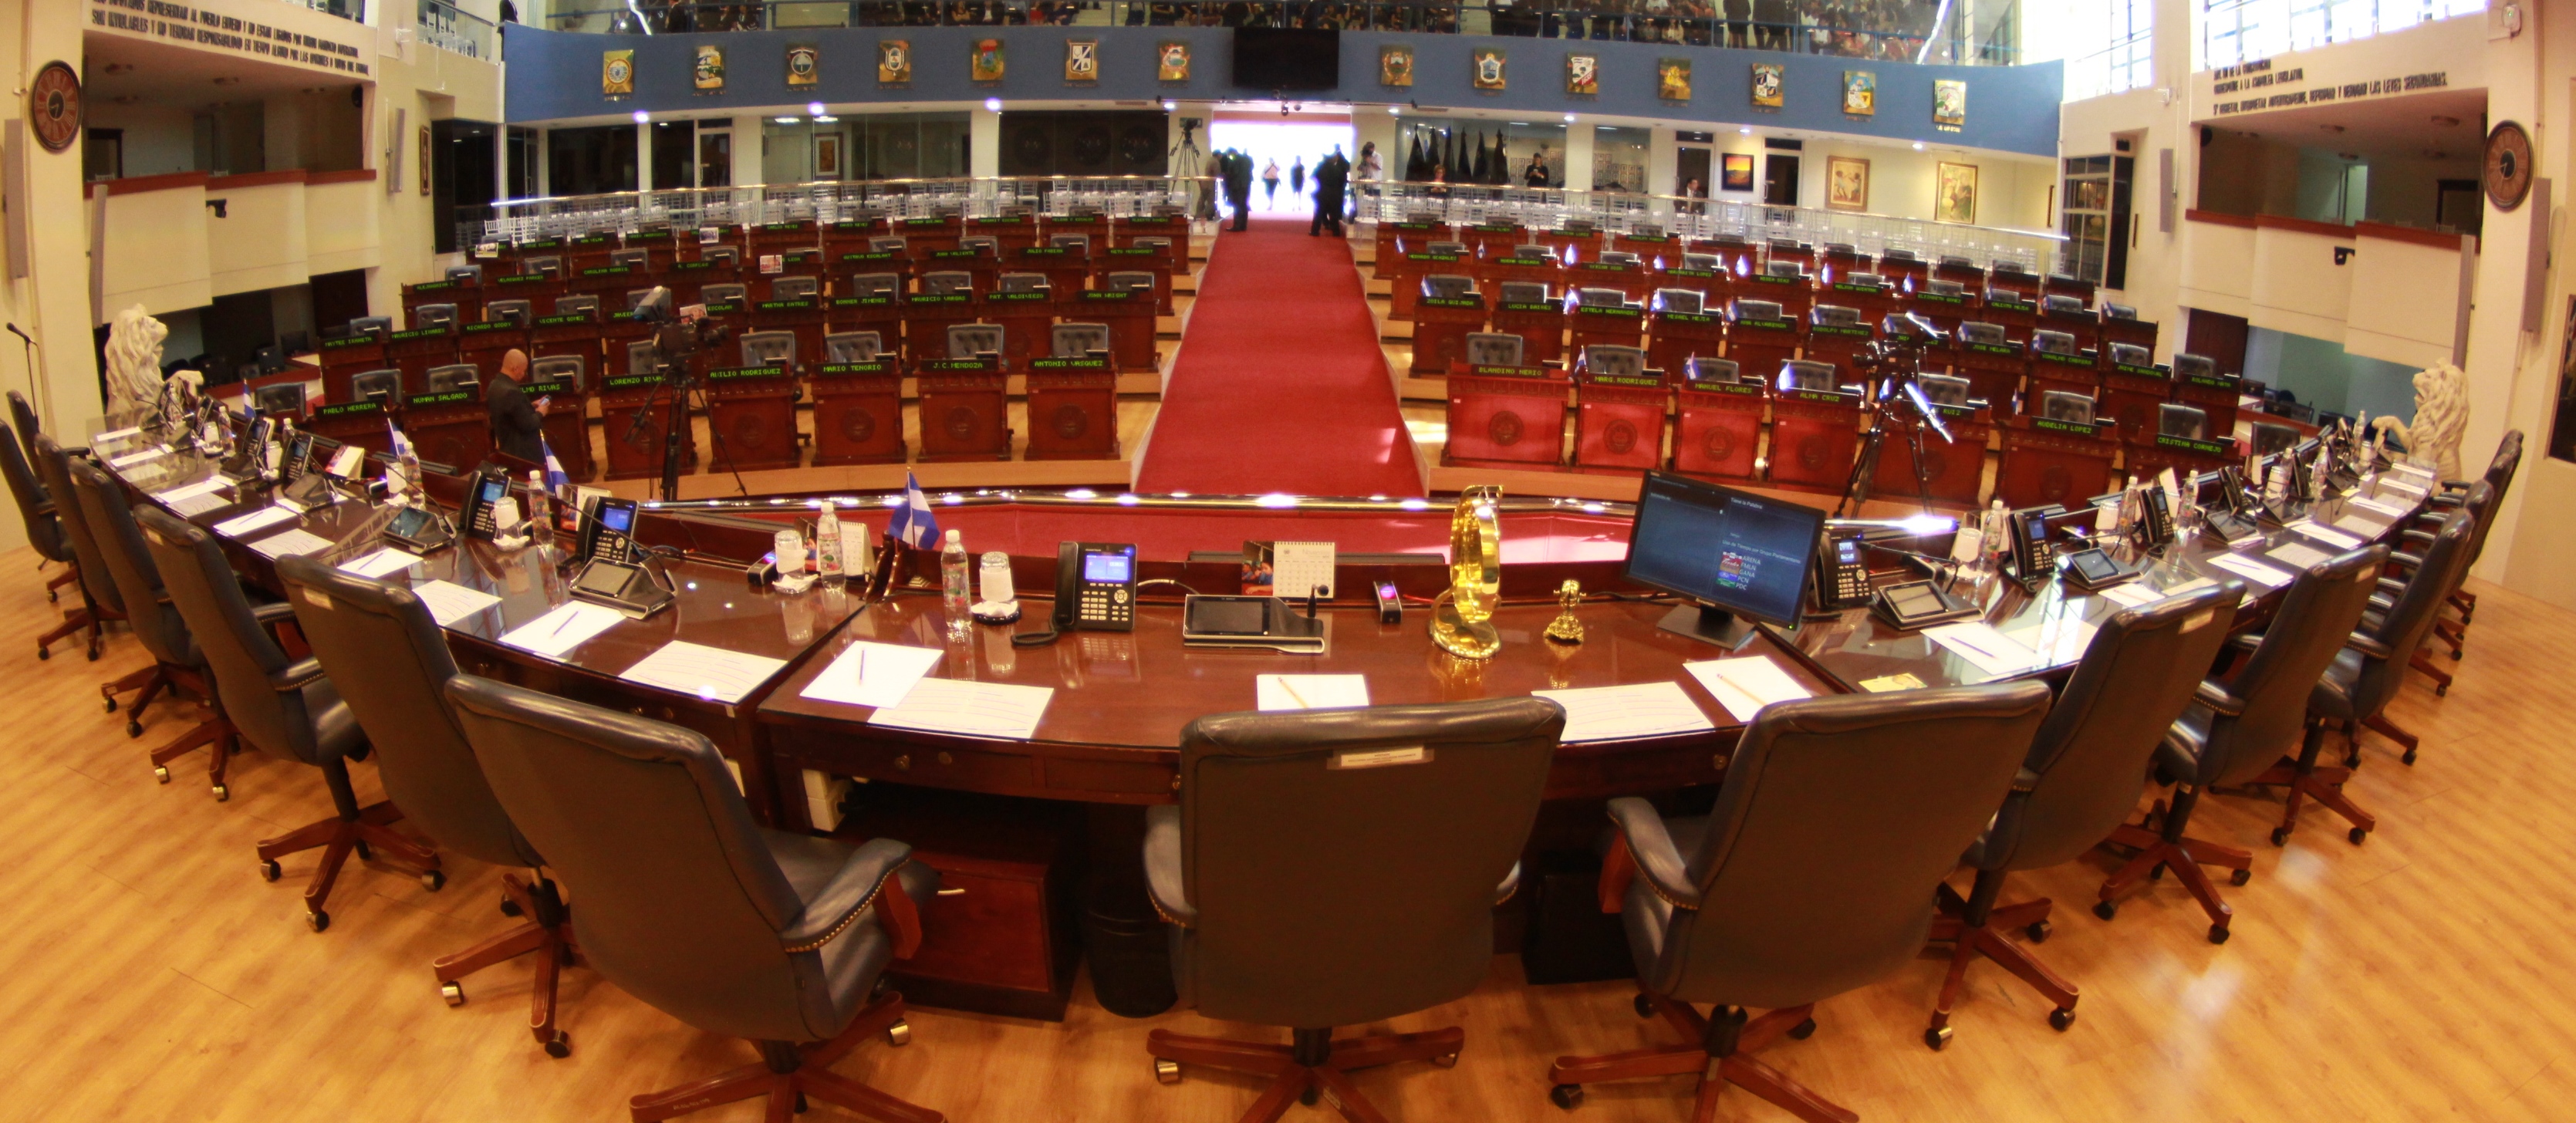 diputados-cierran-sesion-plenaria-para-no-recibir-propuesta-de-reapertura-economica-del-gobierno